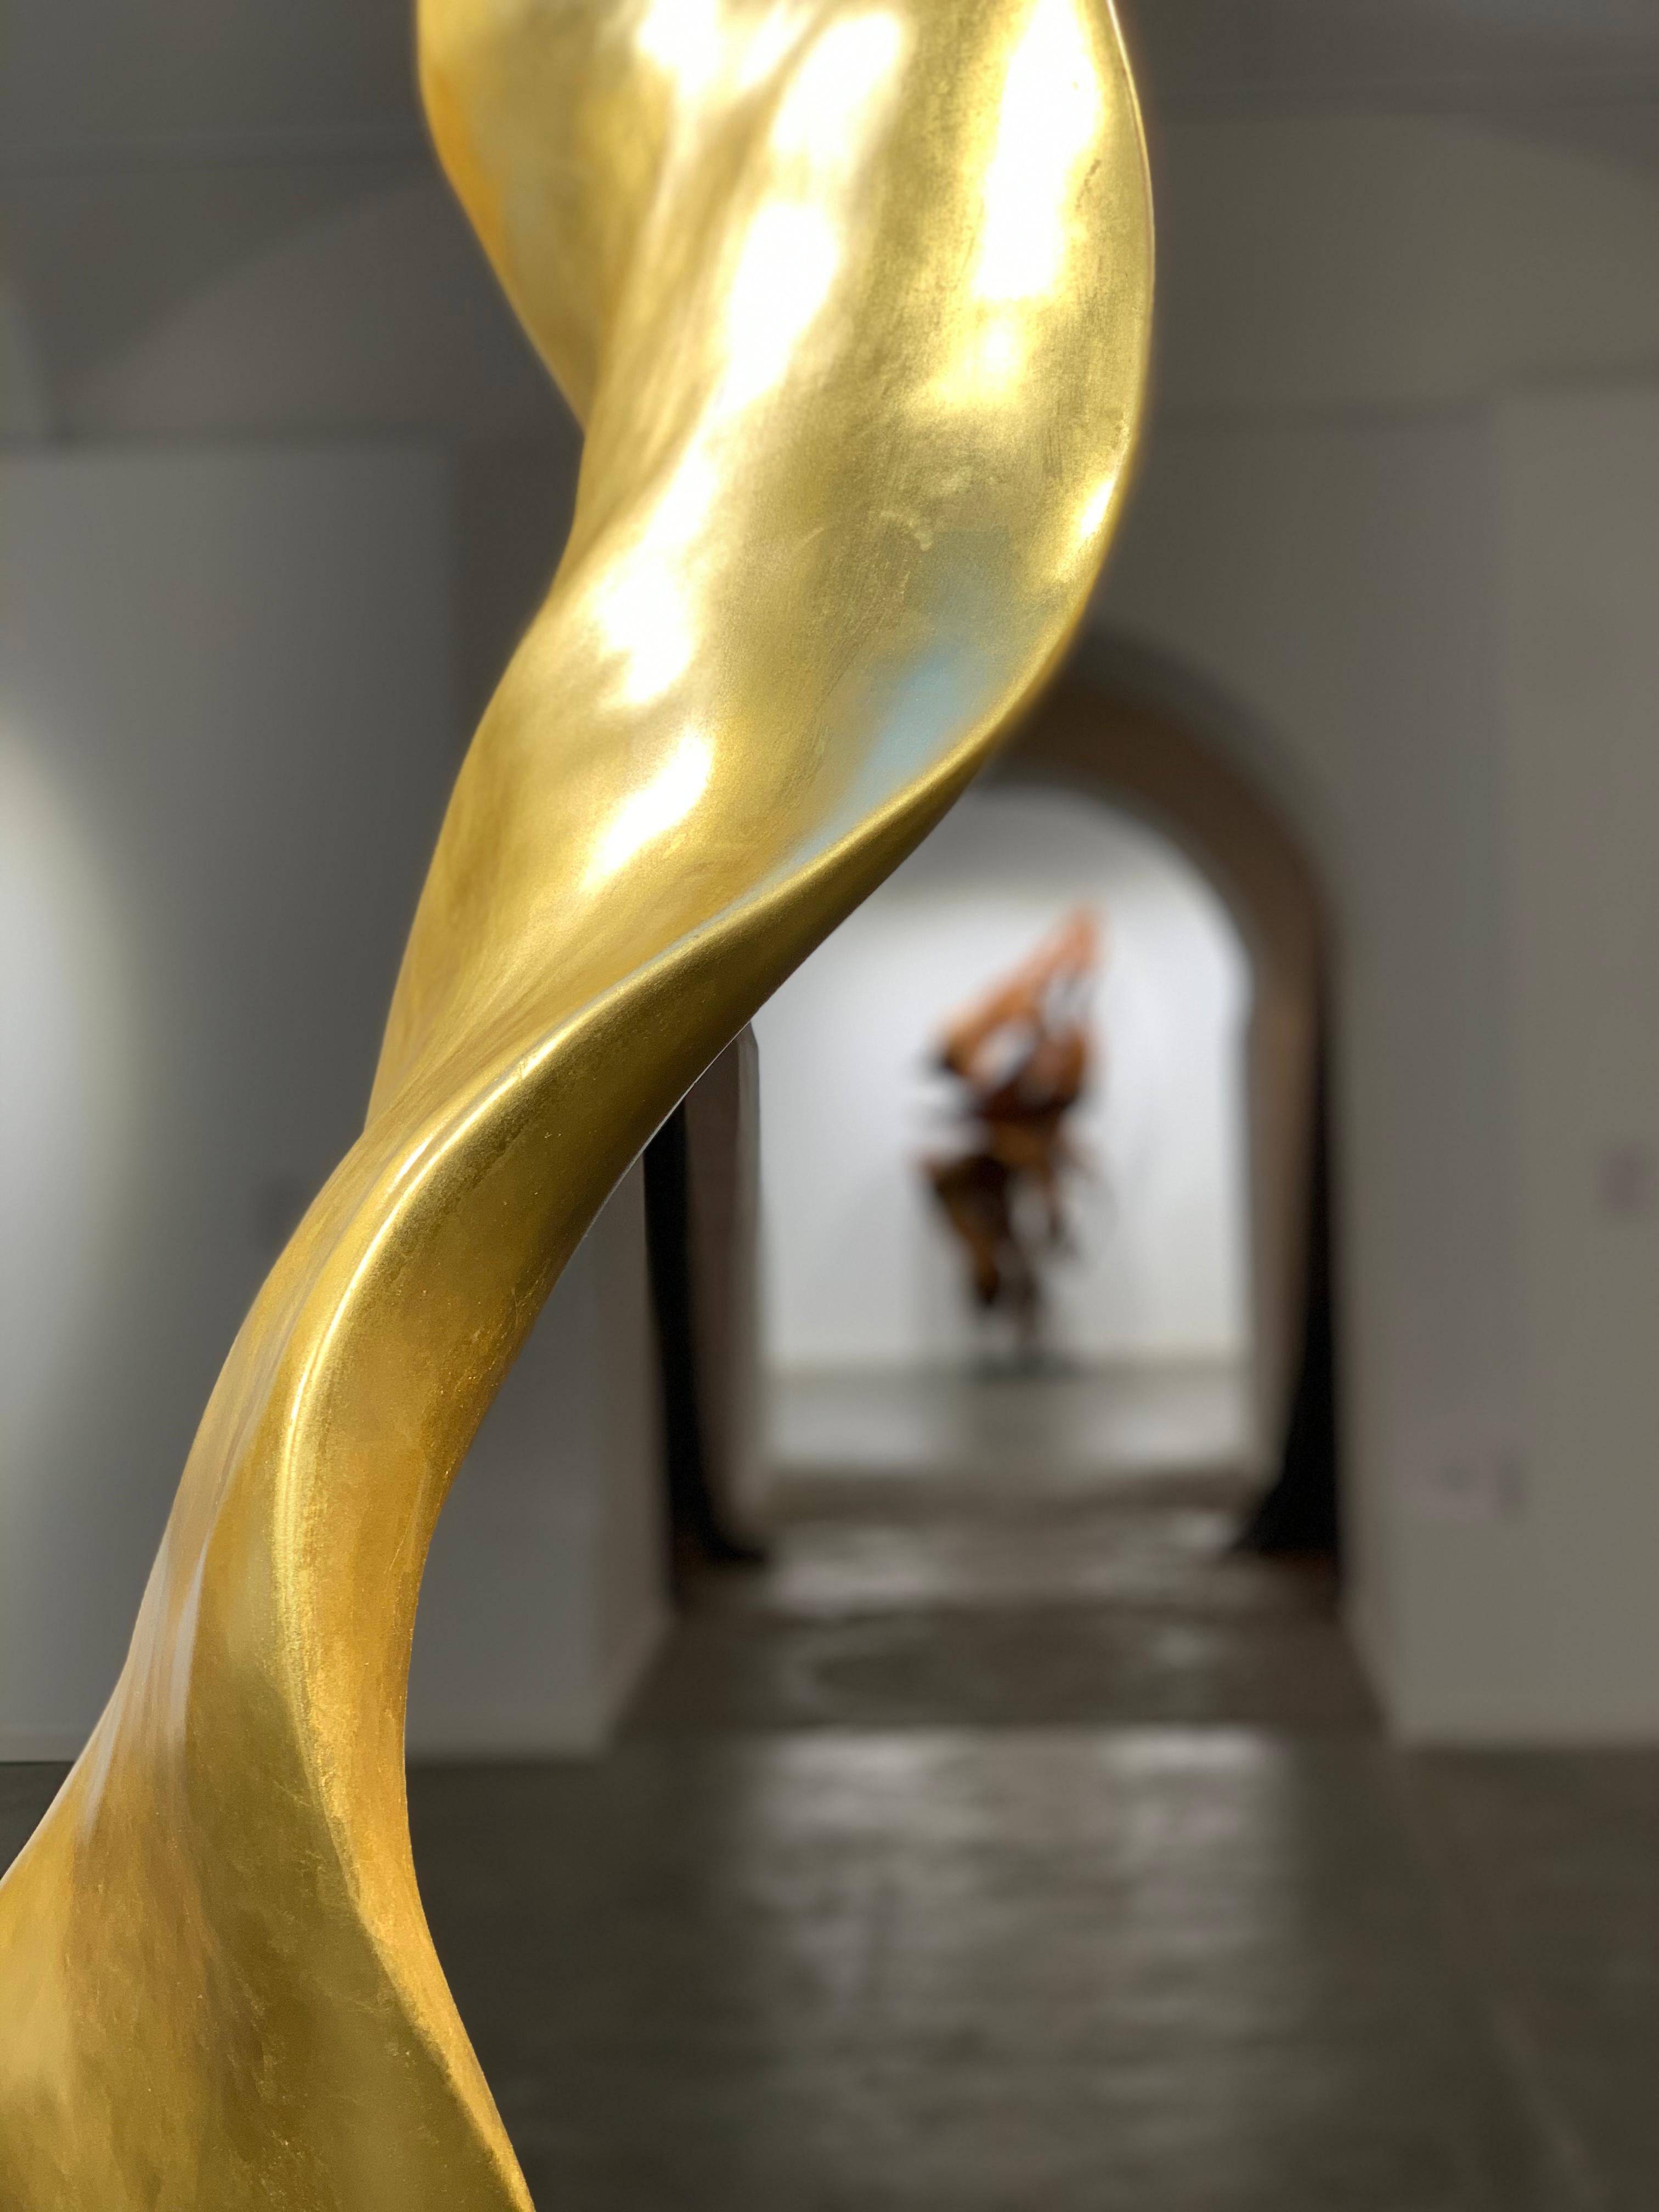 Mahagoniwurzeln und Blattgold

Die Joaquim Ingravidesa Sculpture Alliance besteht aus einer internationalen Gruppe von Bildhauern und Designern, die zusammenarbeiten, um abstrakte, von der Natur inspirierte Skulpturen zu schaffen. Sie arbeiten oft